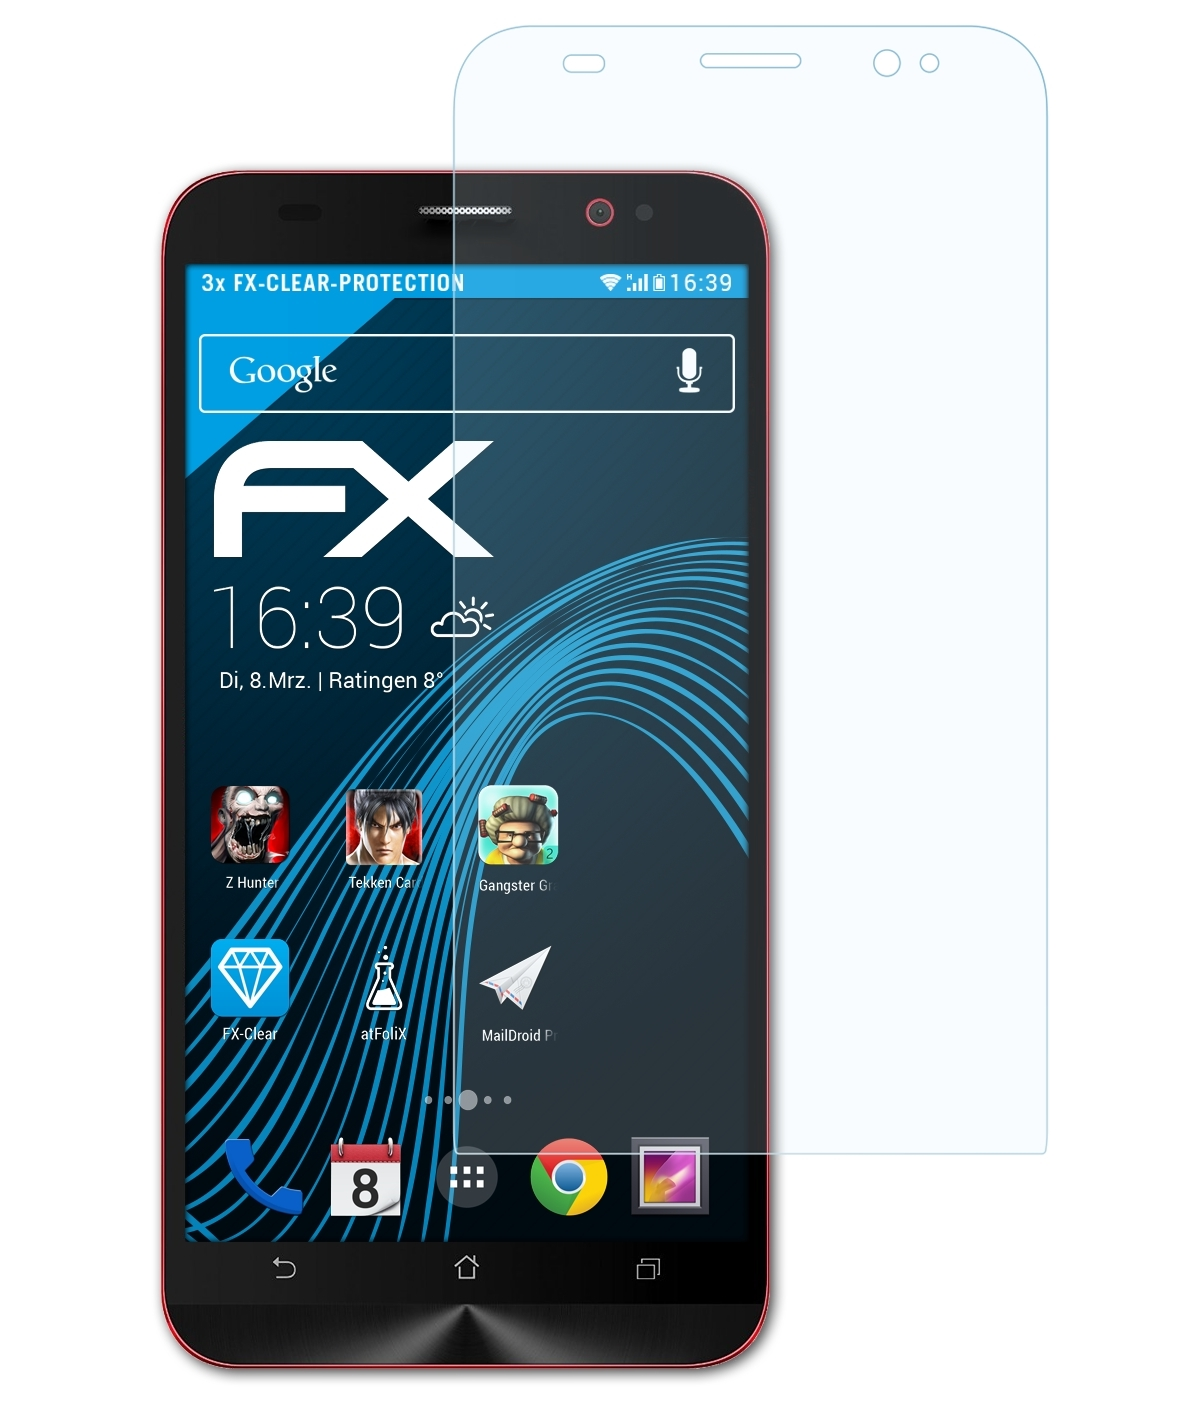 (ZE550ML/551ML)) 2 ATFOLIX Displayschutz(für FX-Clear 3x Asus ZenFone Deluxe